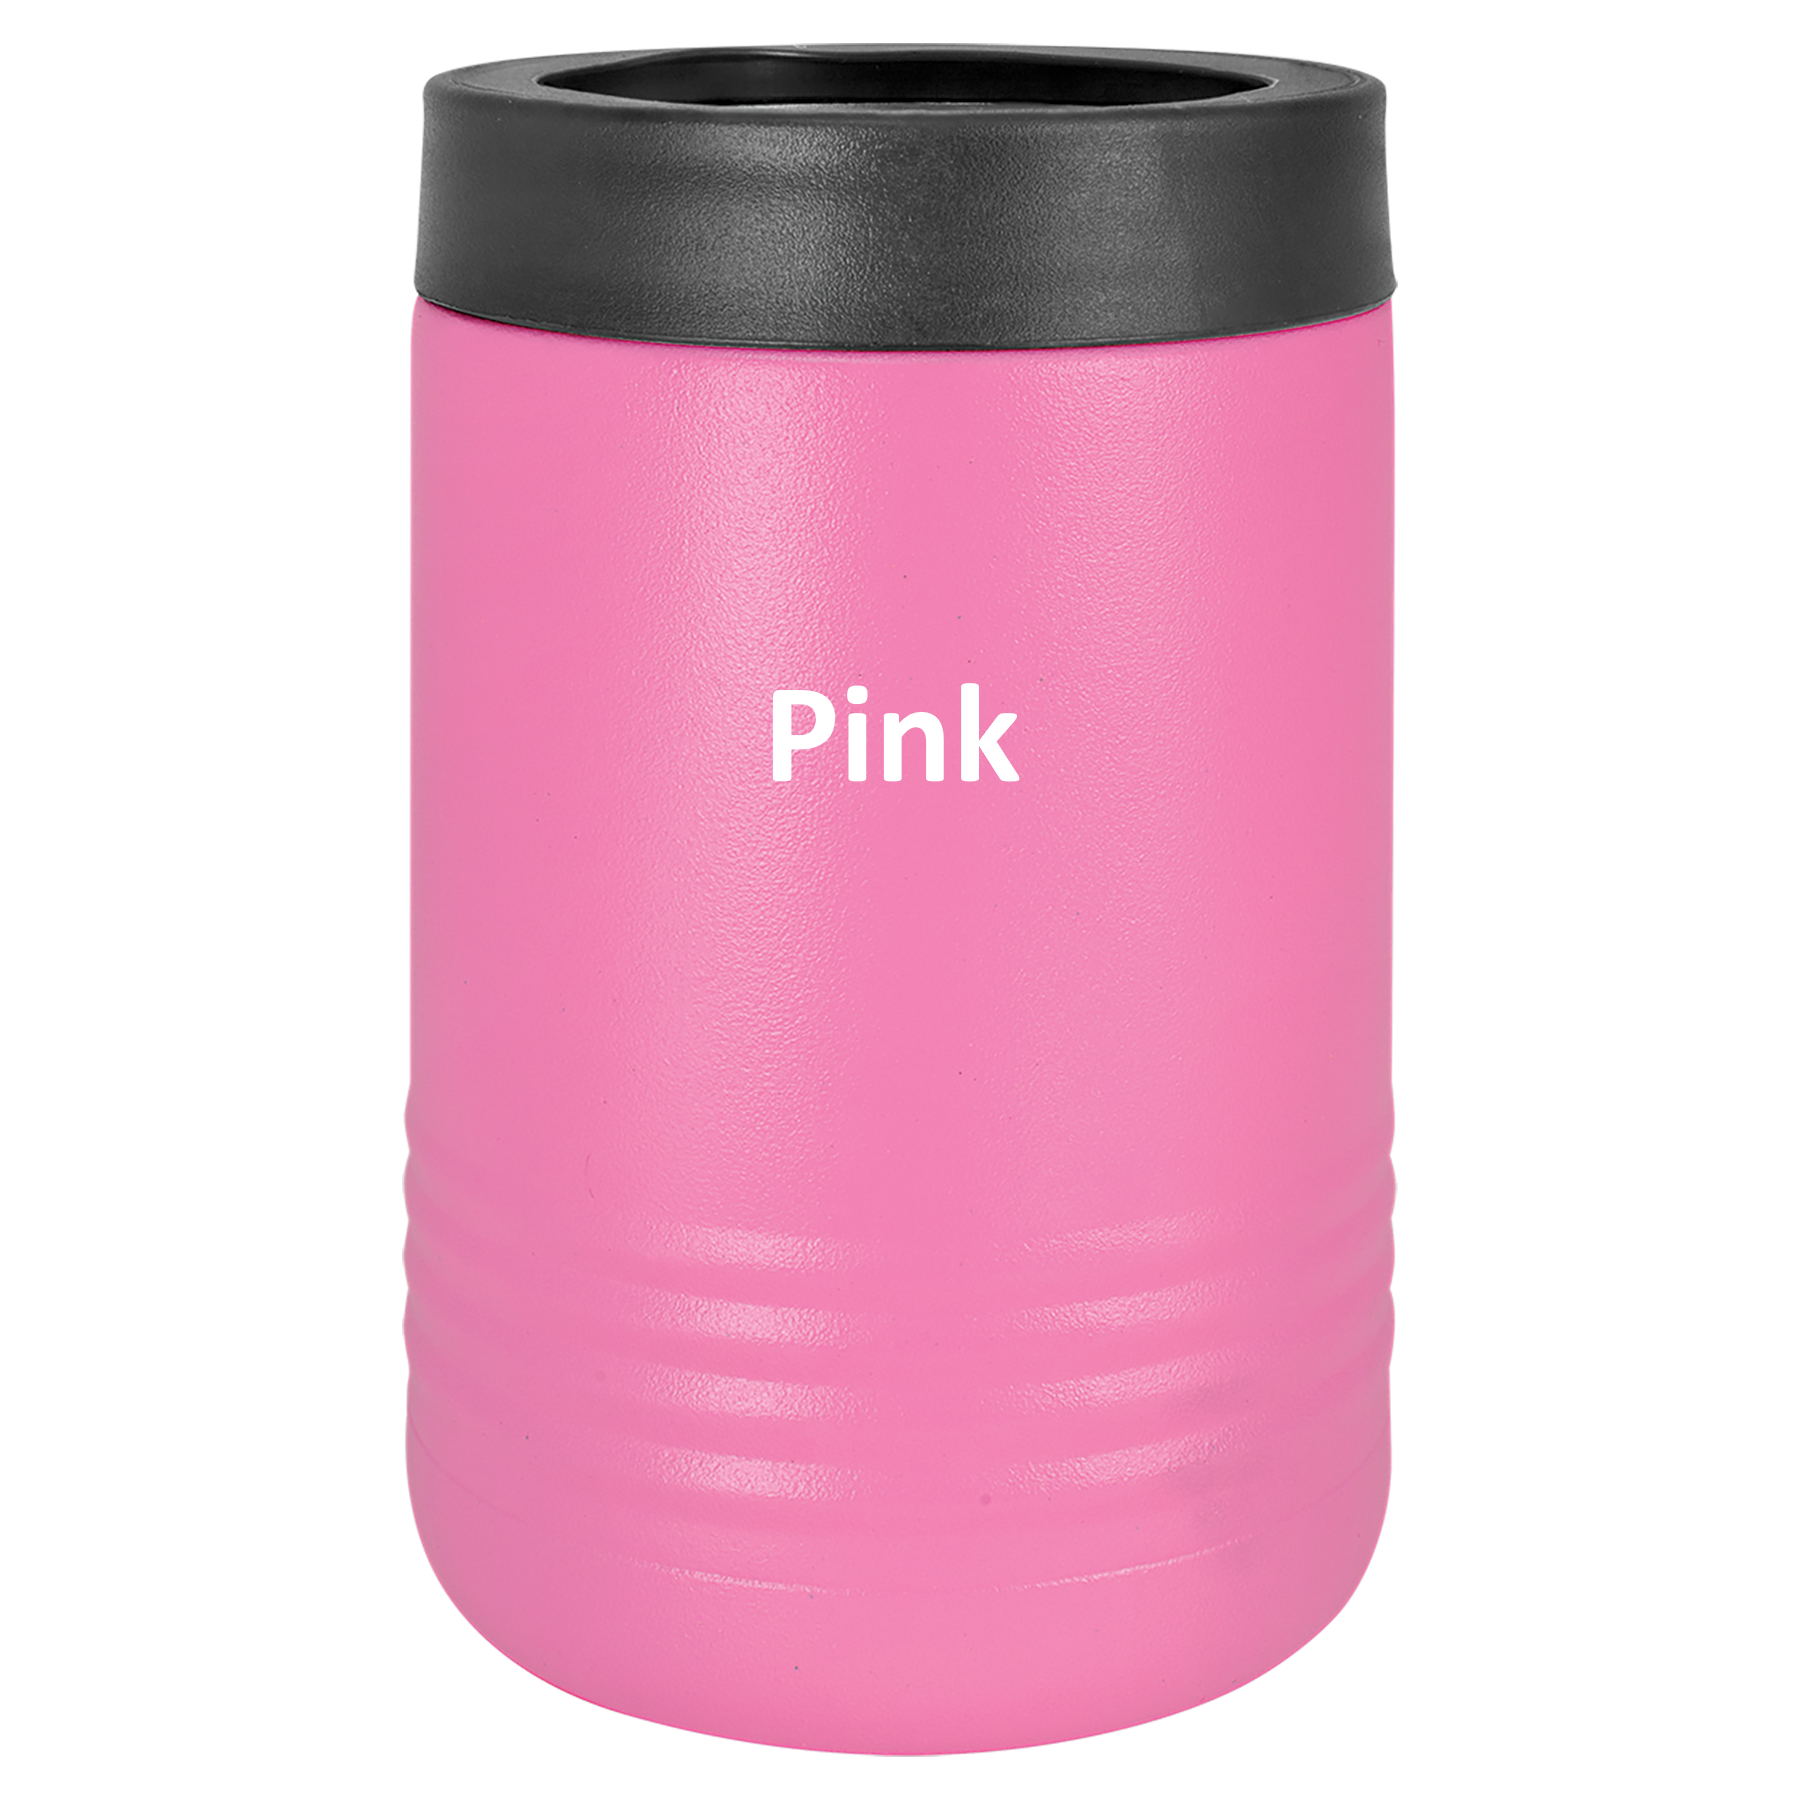 Pink 12oz Beverage Holder